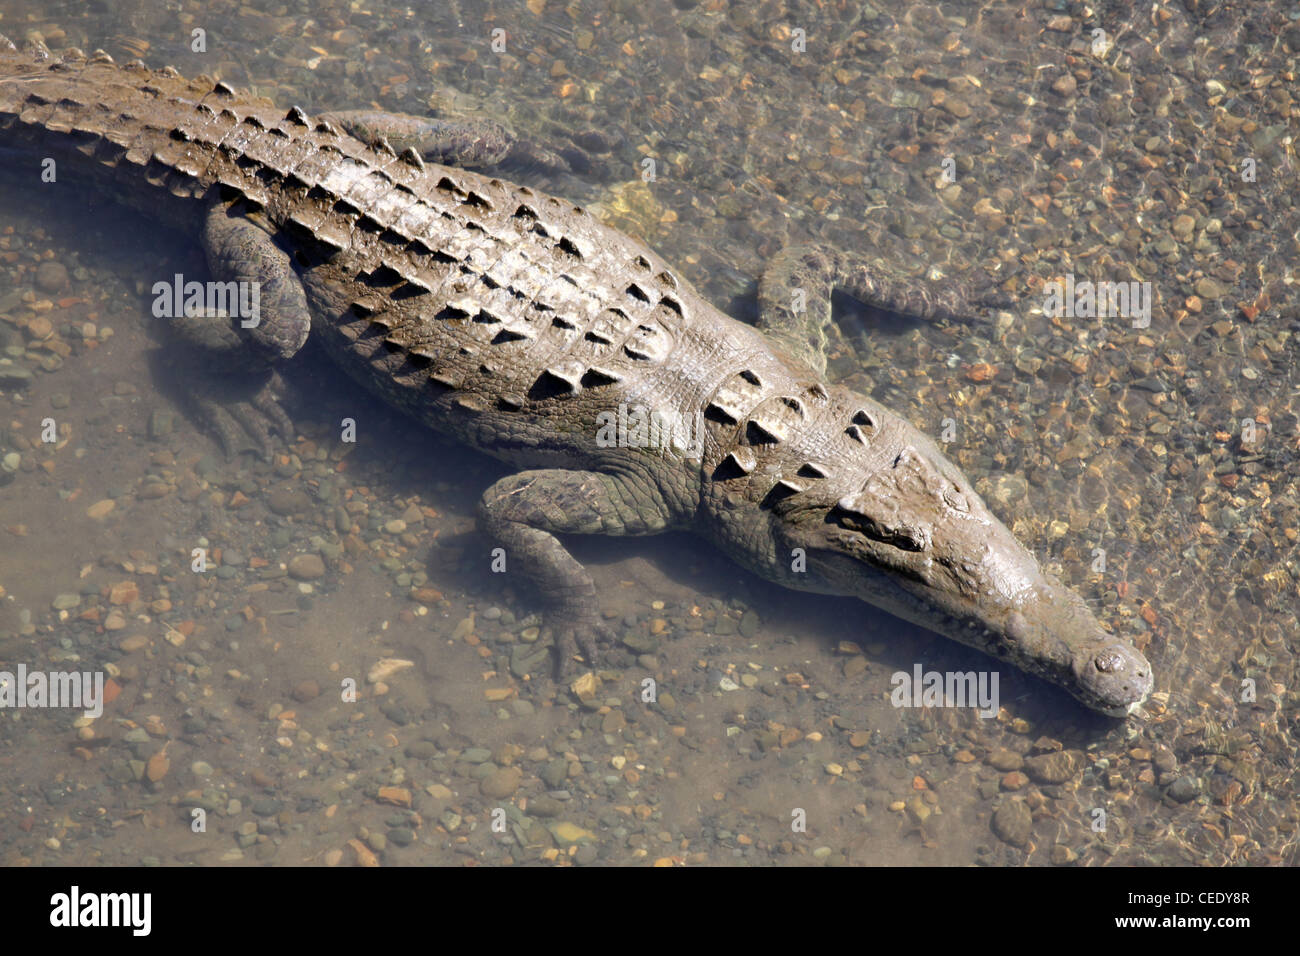 El cocodrilo americano Crocodylus acutus Foto de stock